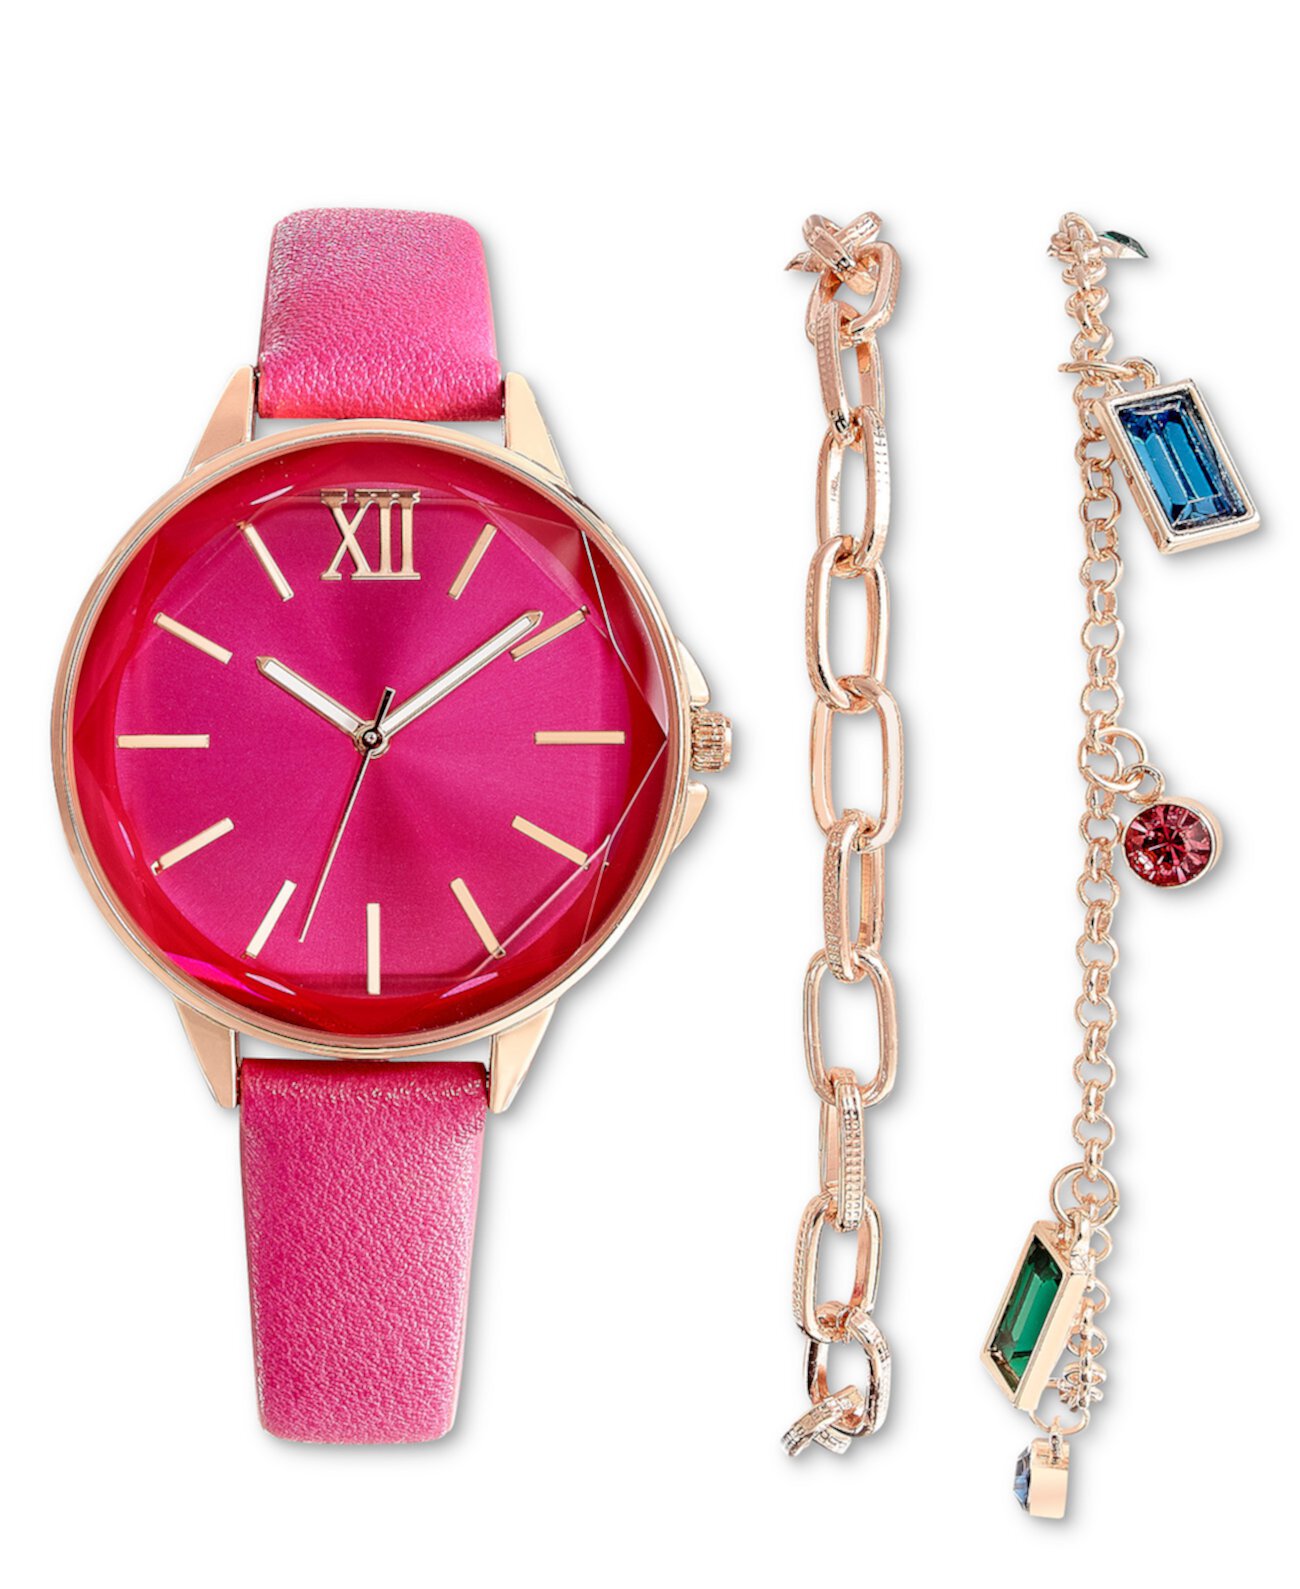 Подарочный набор женских часов с розовым ремешком, 36 мм, созданный для Macy's I.N.C. International Concepts